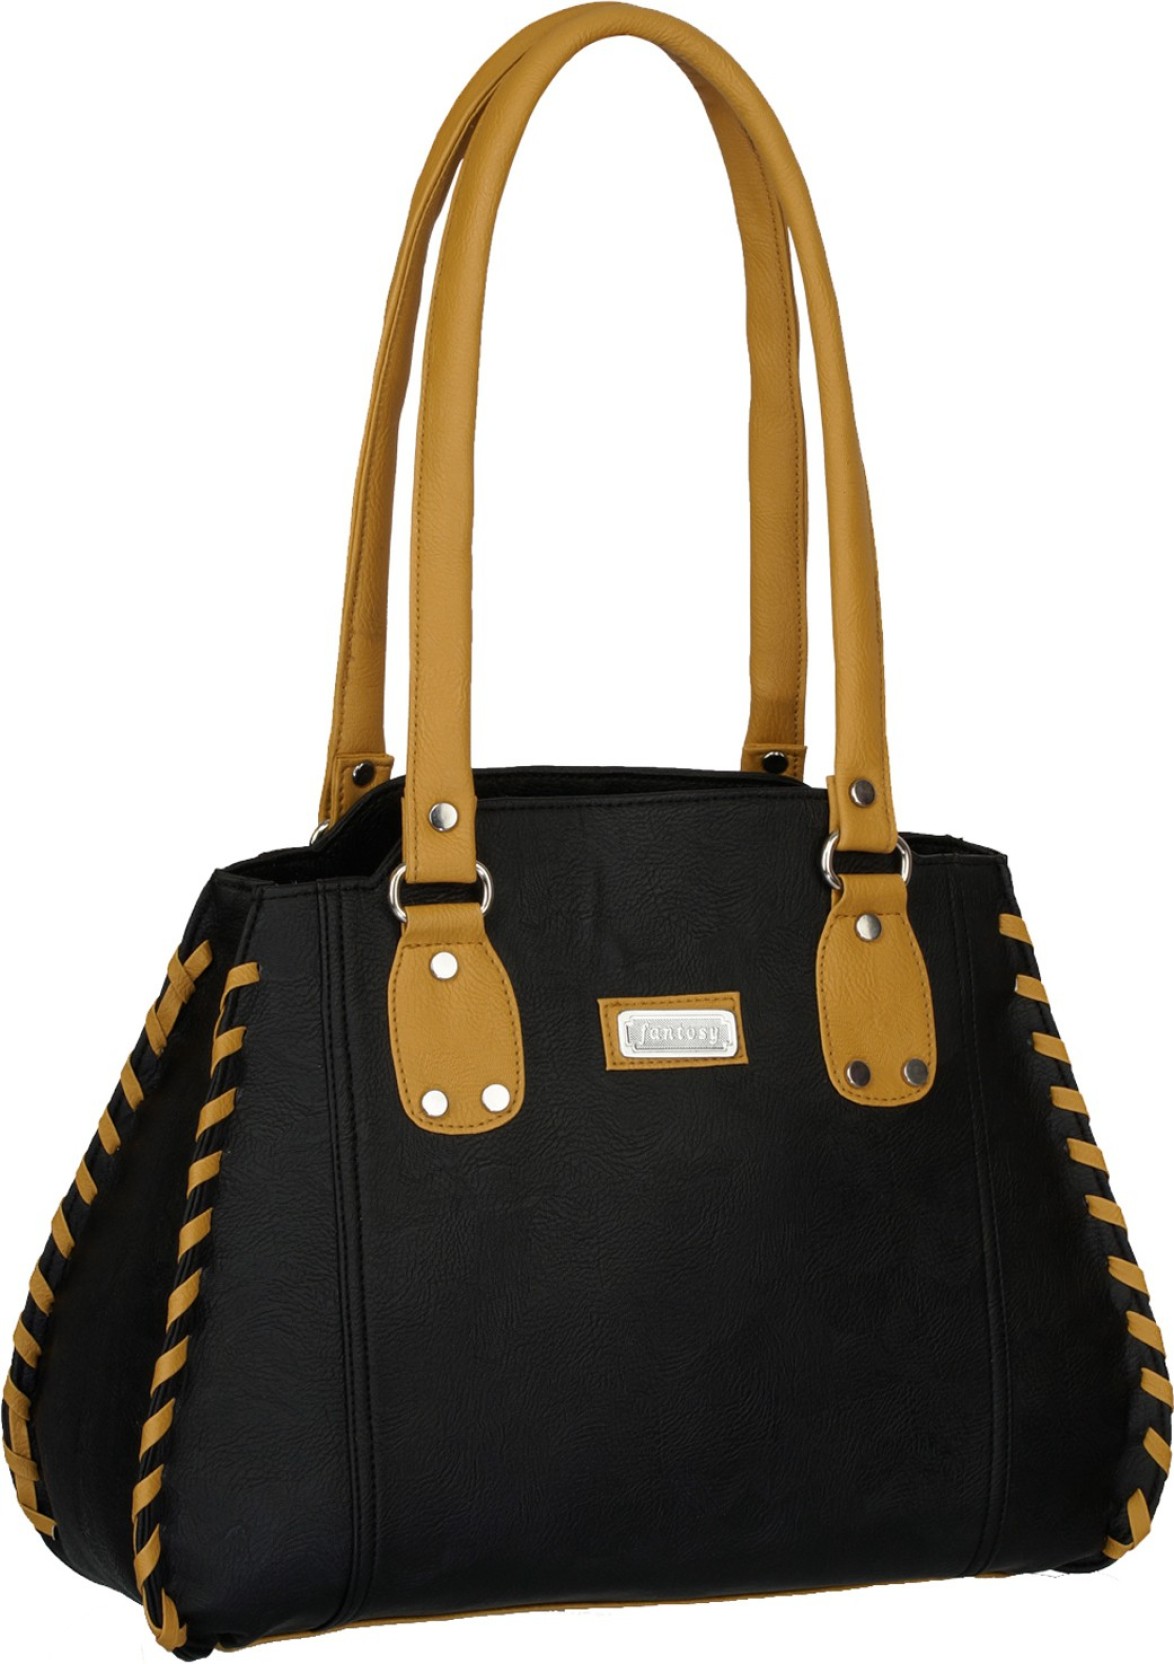 Buy Fantosy Hand-held Bag Black Online @ Best Price in India | www.bagssaleusa.com